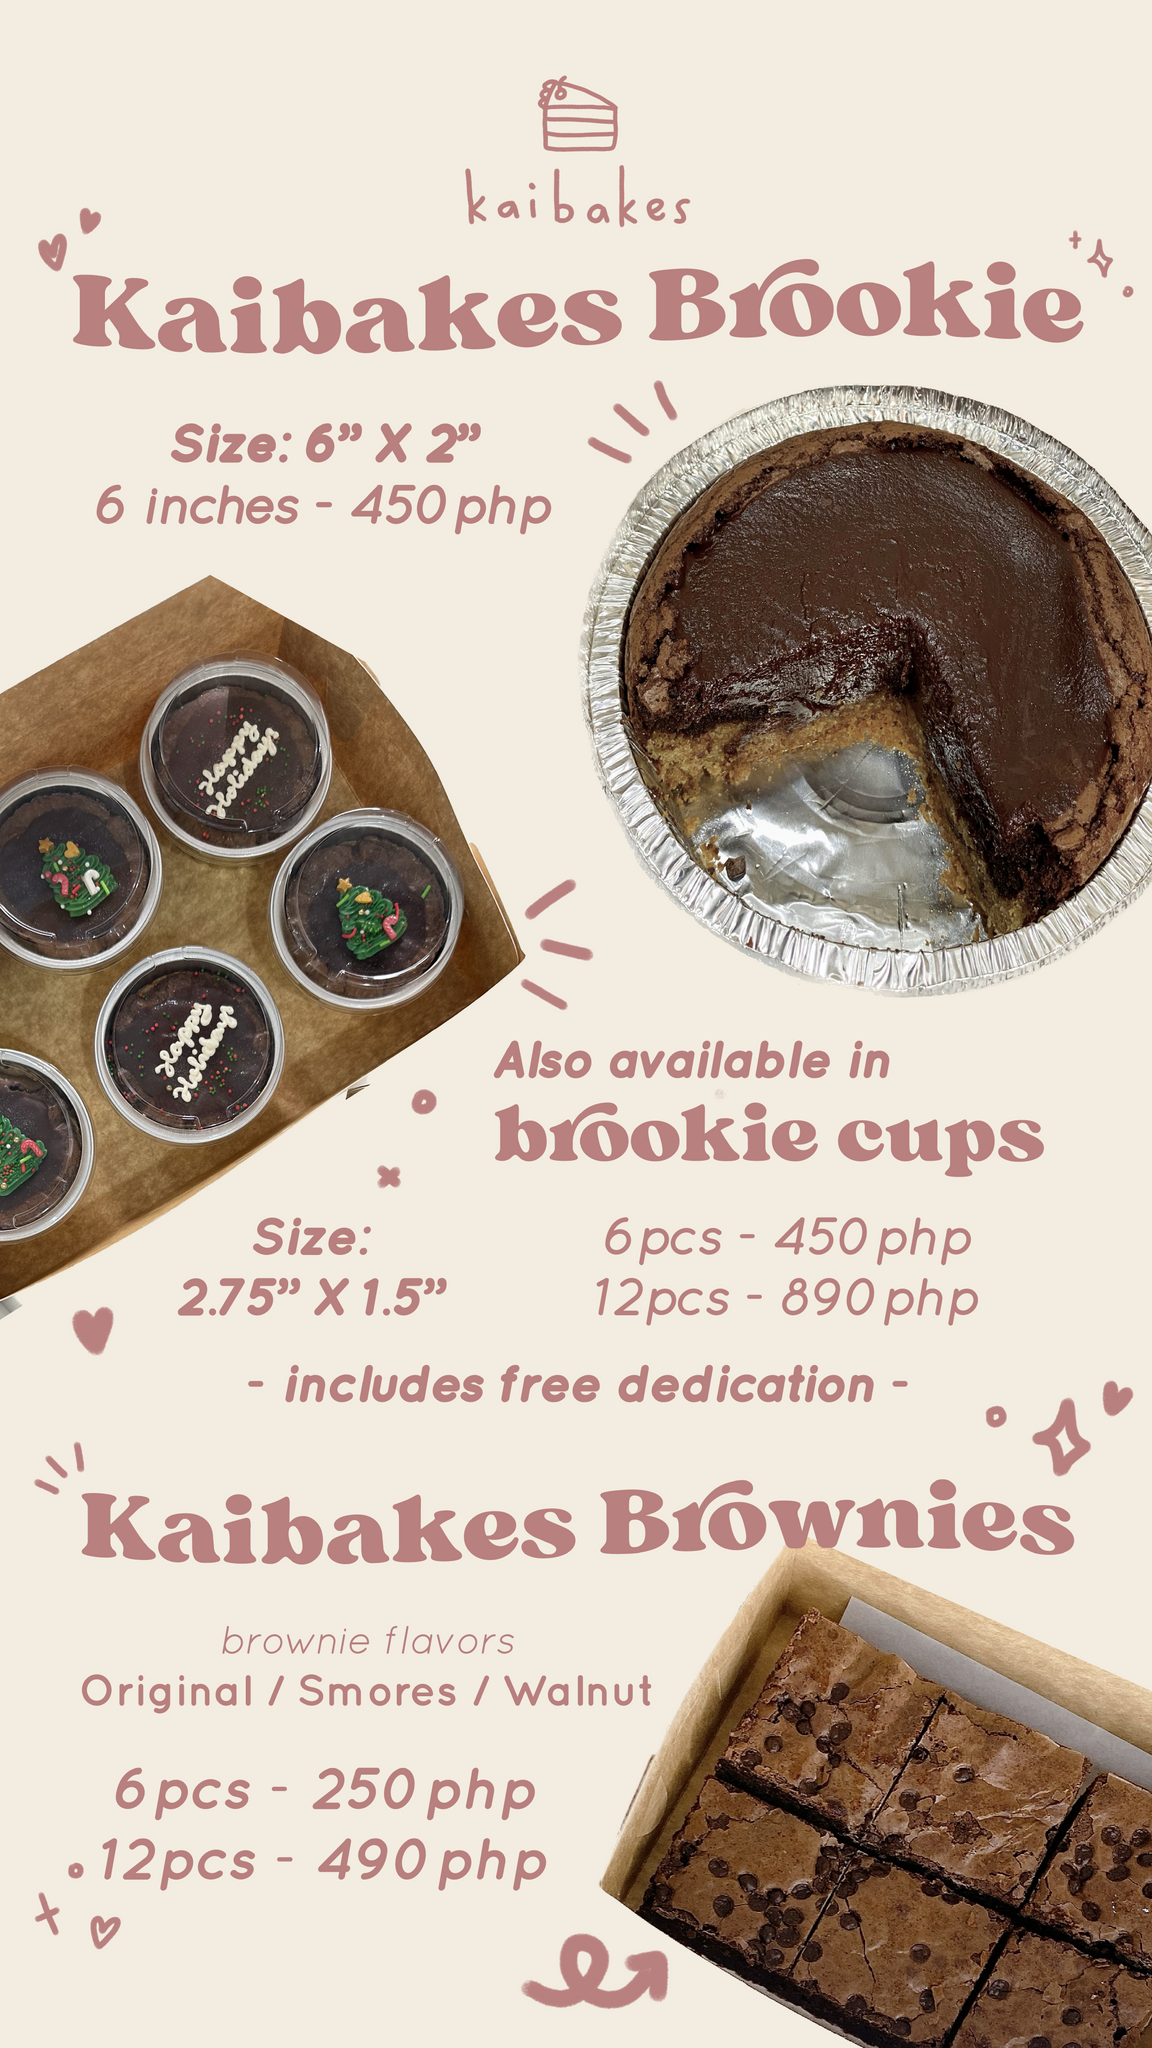 Kaibakes Brownies